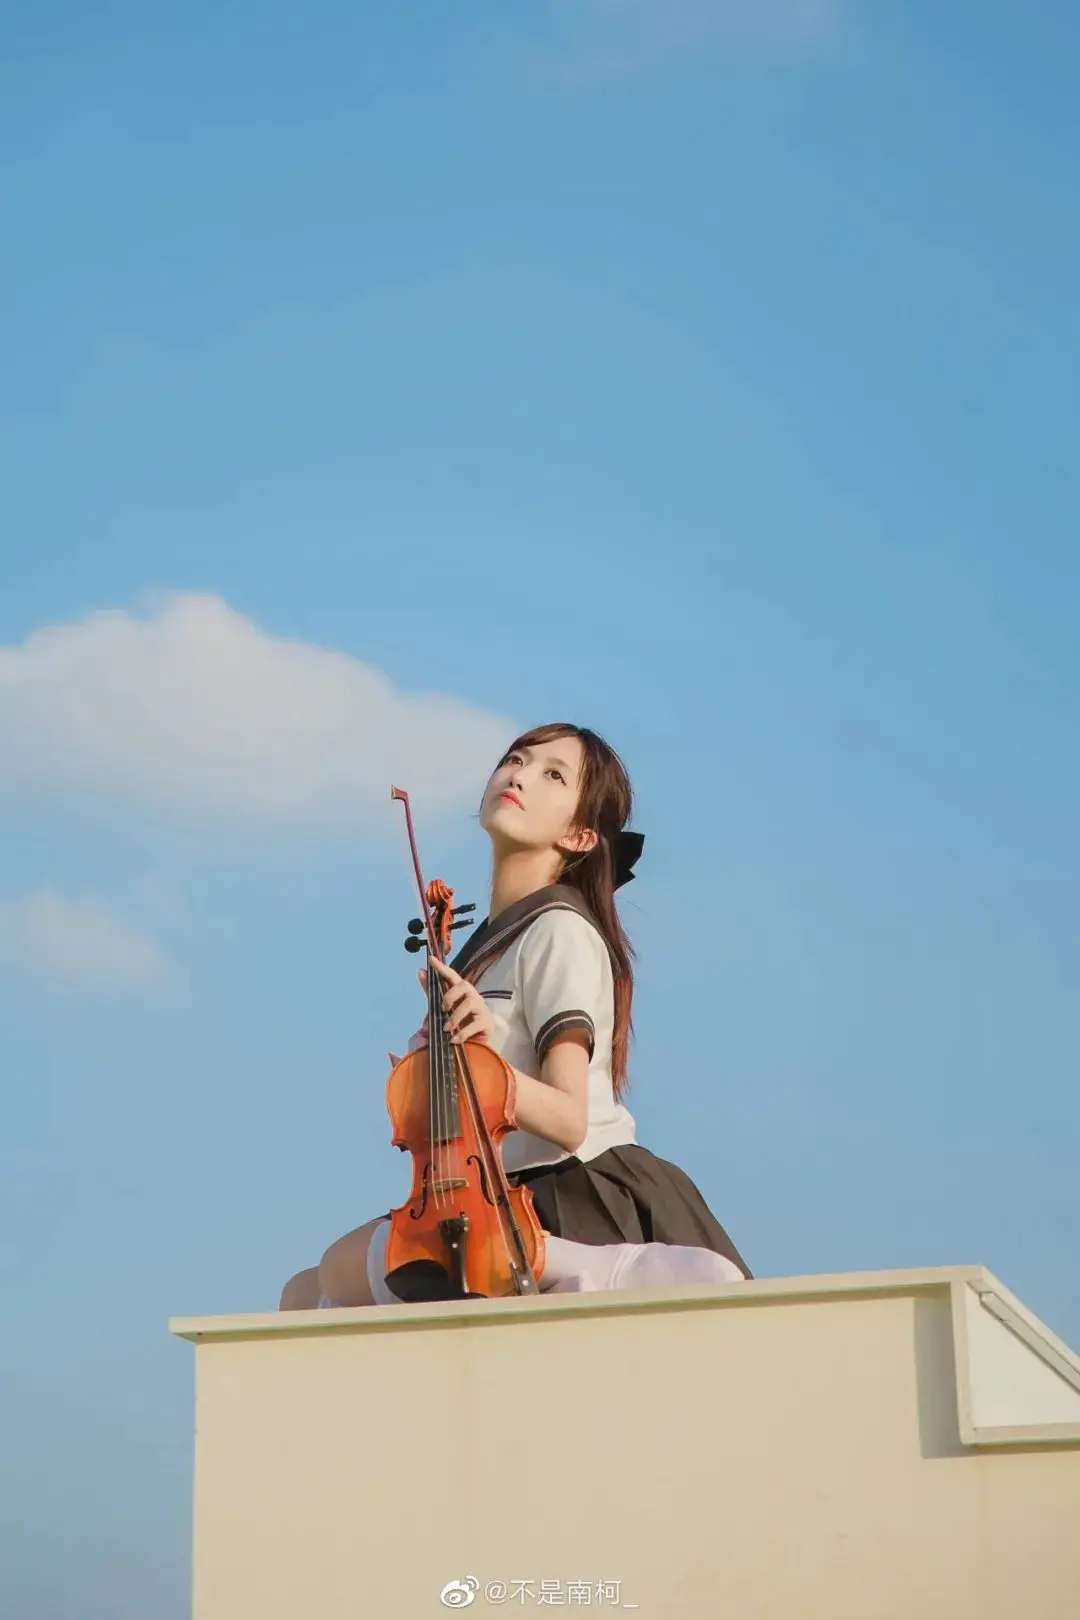 jk制服写真：天台上的JK制服与小提琴插图4